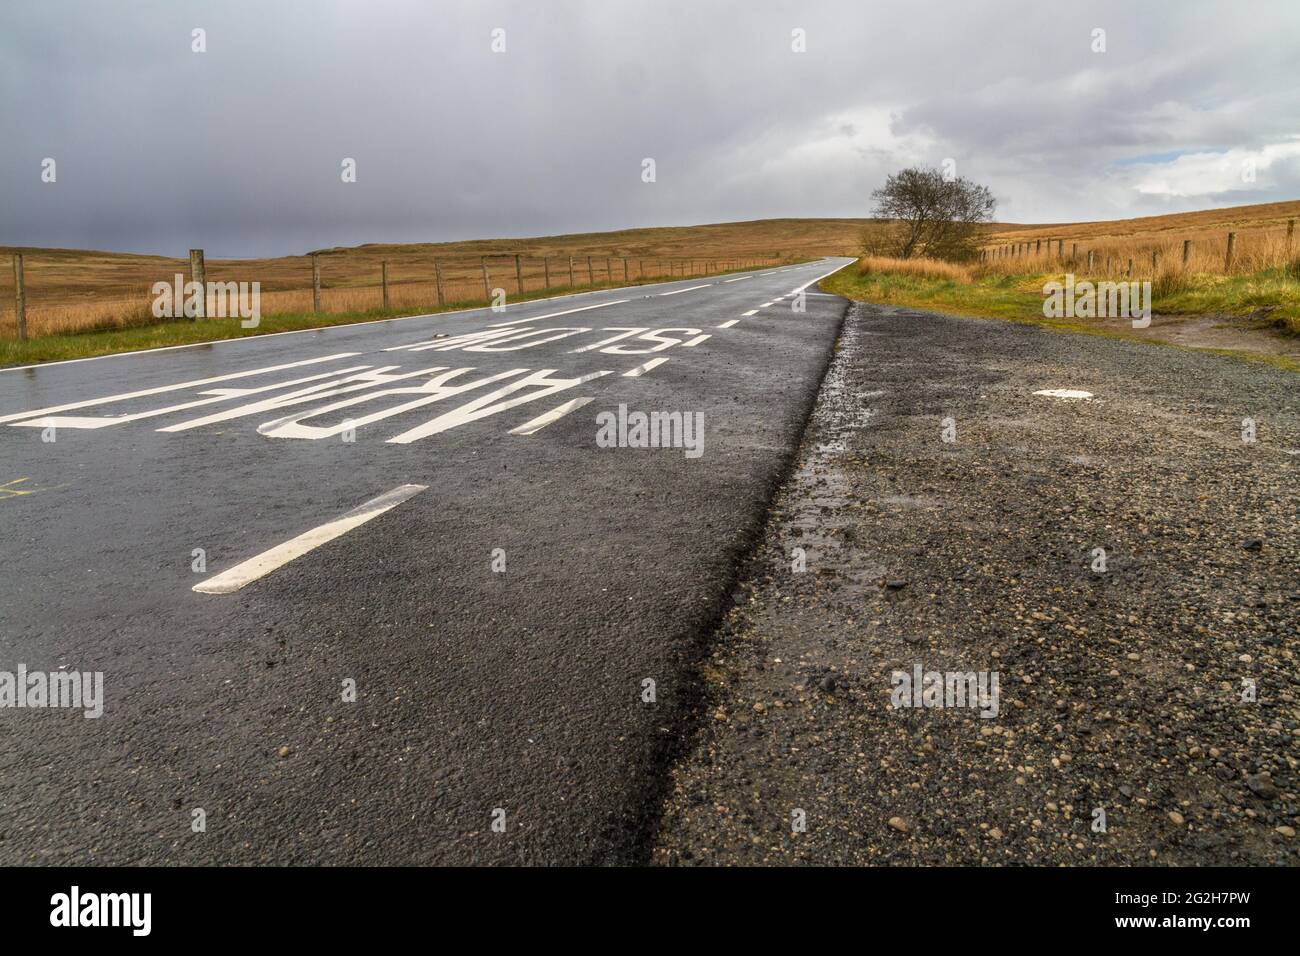 Al norte de Pentrefoelas, Gales del Norte, la carretera A543 a través de la hierba de páramo, parte del famoso Triángulo DE EVO para vehículos de carreras, paisaje. Foto de stock